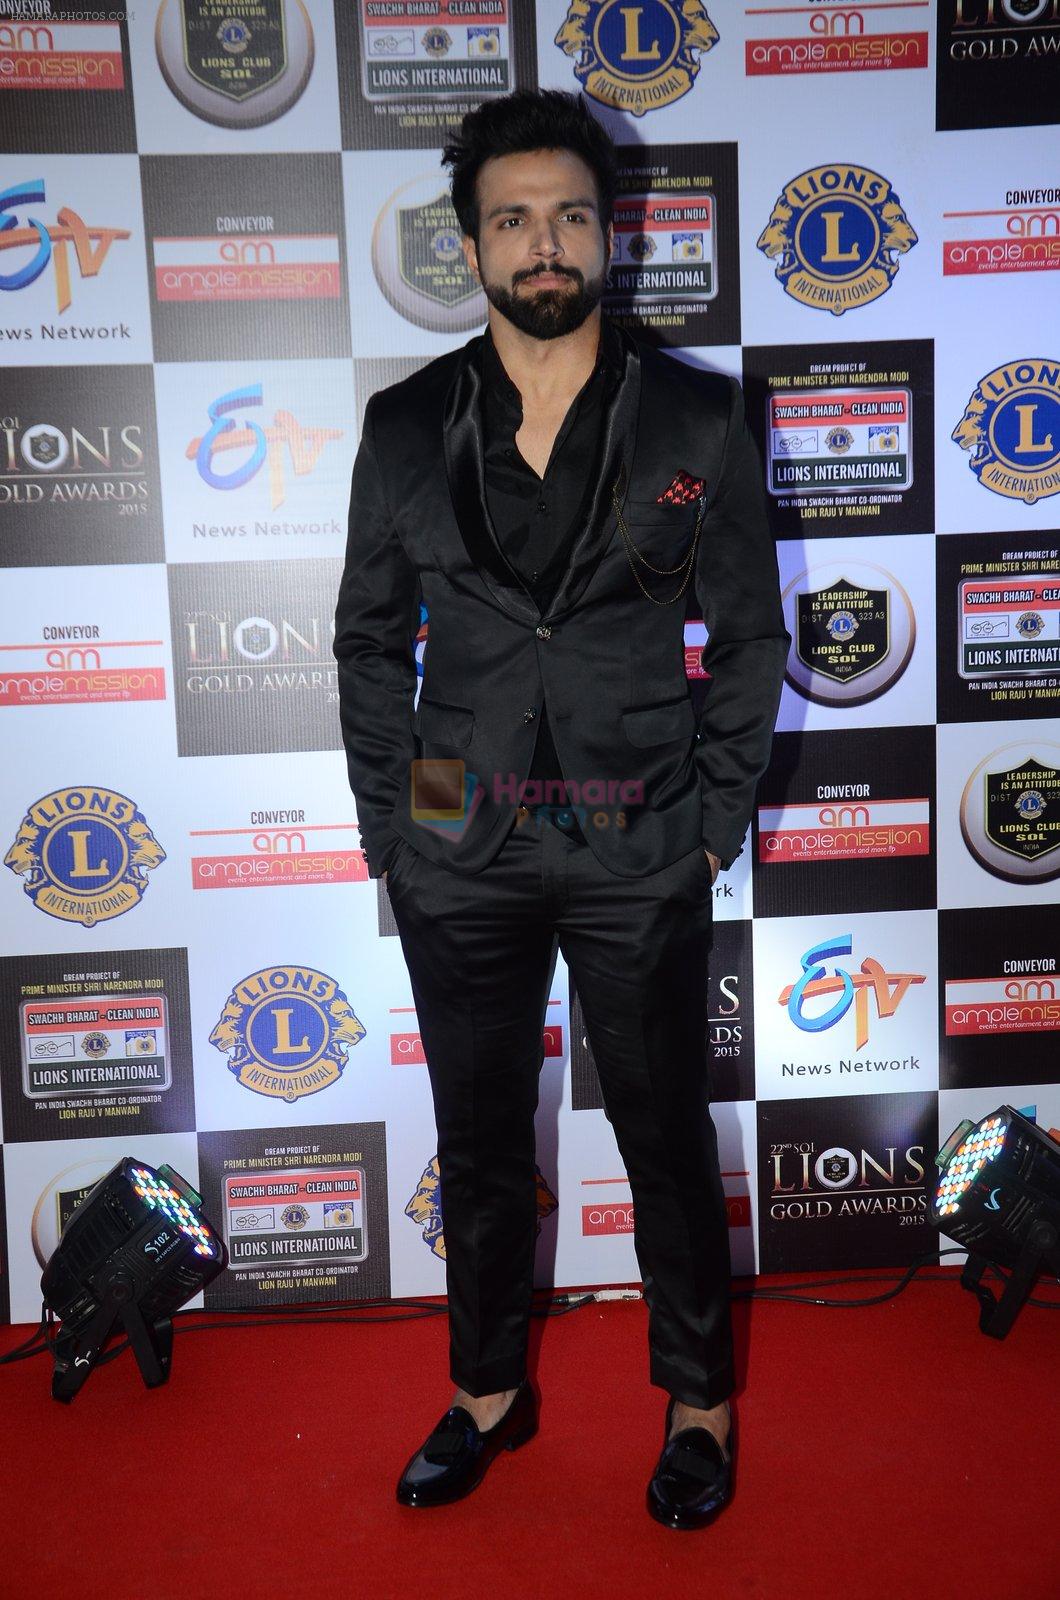 Rithvik Dhanjani at Lions Awards 2016 on 22nd Jan 2016